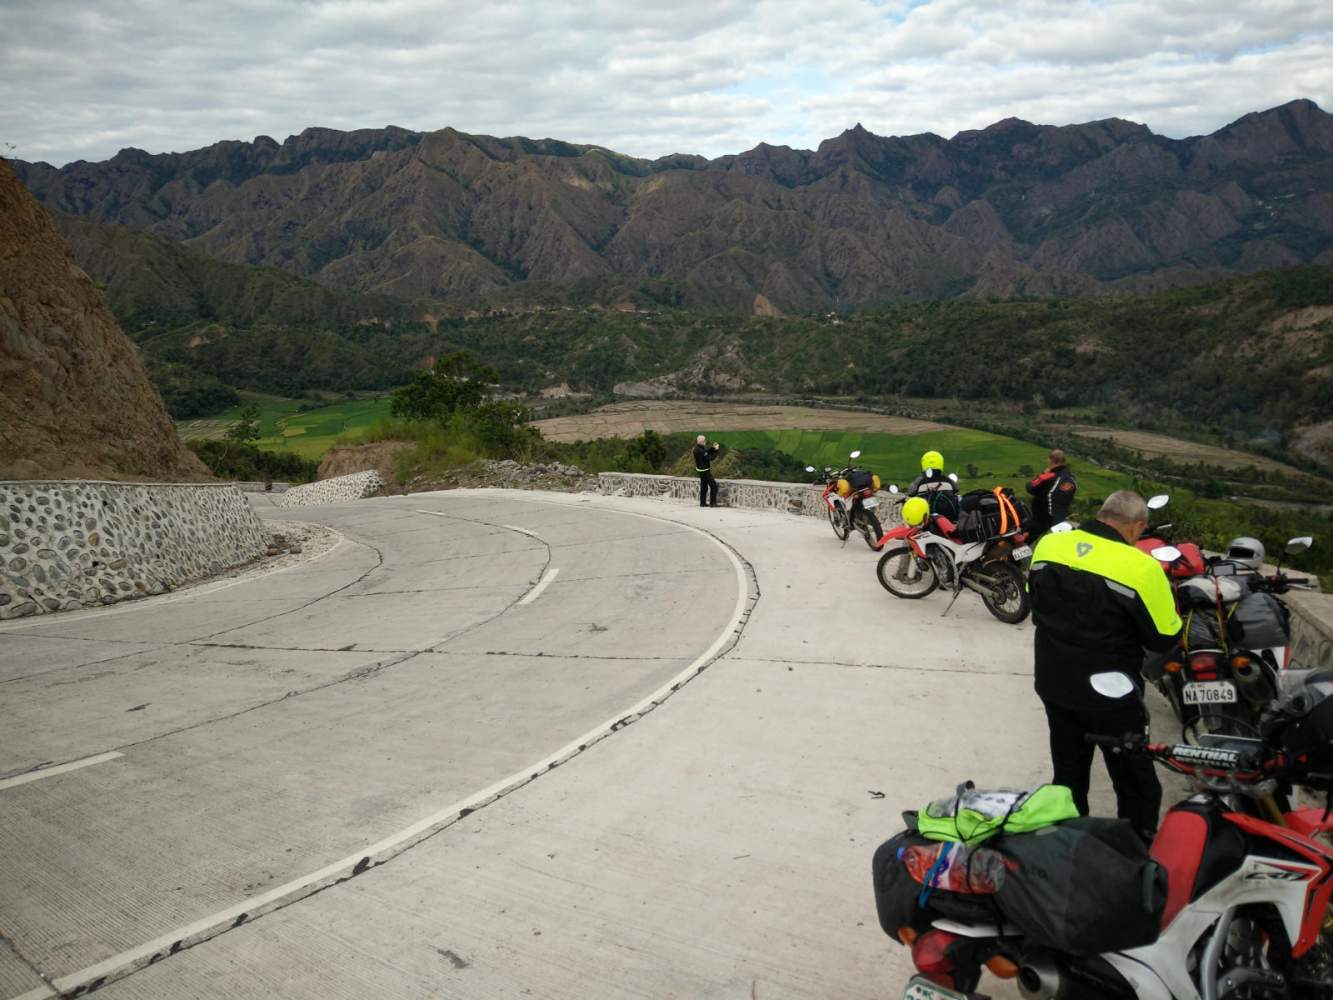 Auf der Philippinen Motorradreise erwarten uns schöne Kurven und majestätische Berge. Immer wieder lohnt es sich die Motoren unserer Bikes abzustellen um die Landschaft zu genießen und ein paar Fotos zu schießen.